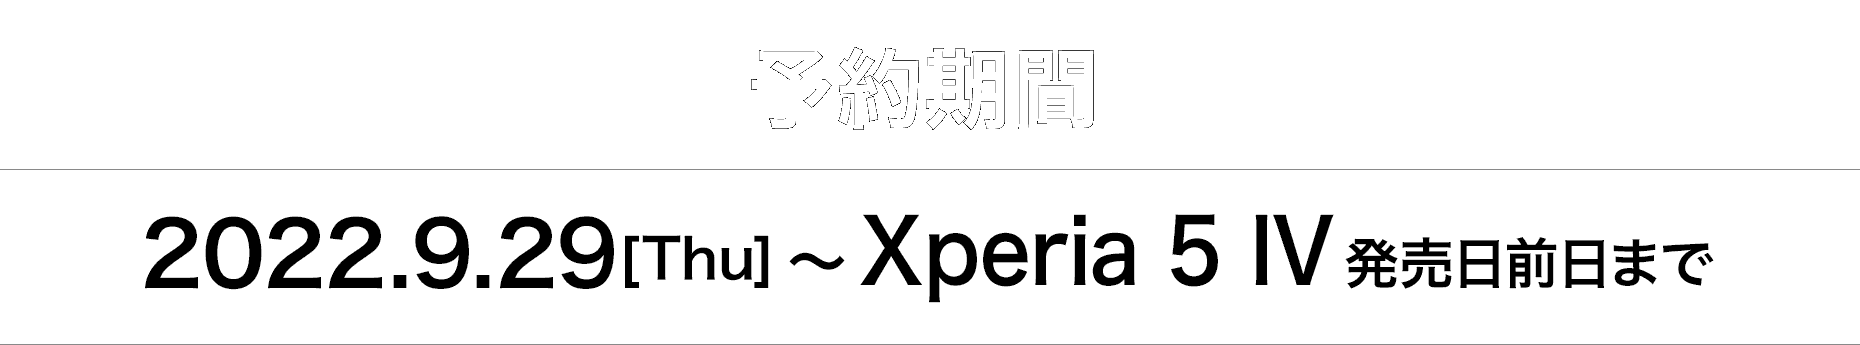 予約期間 2022.9.29[Thu]〜Xperia 5 IV 発売日前日まで